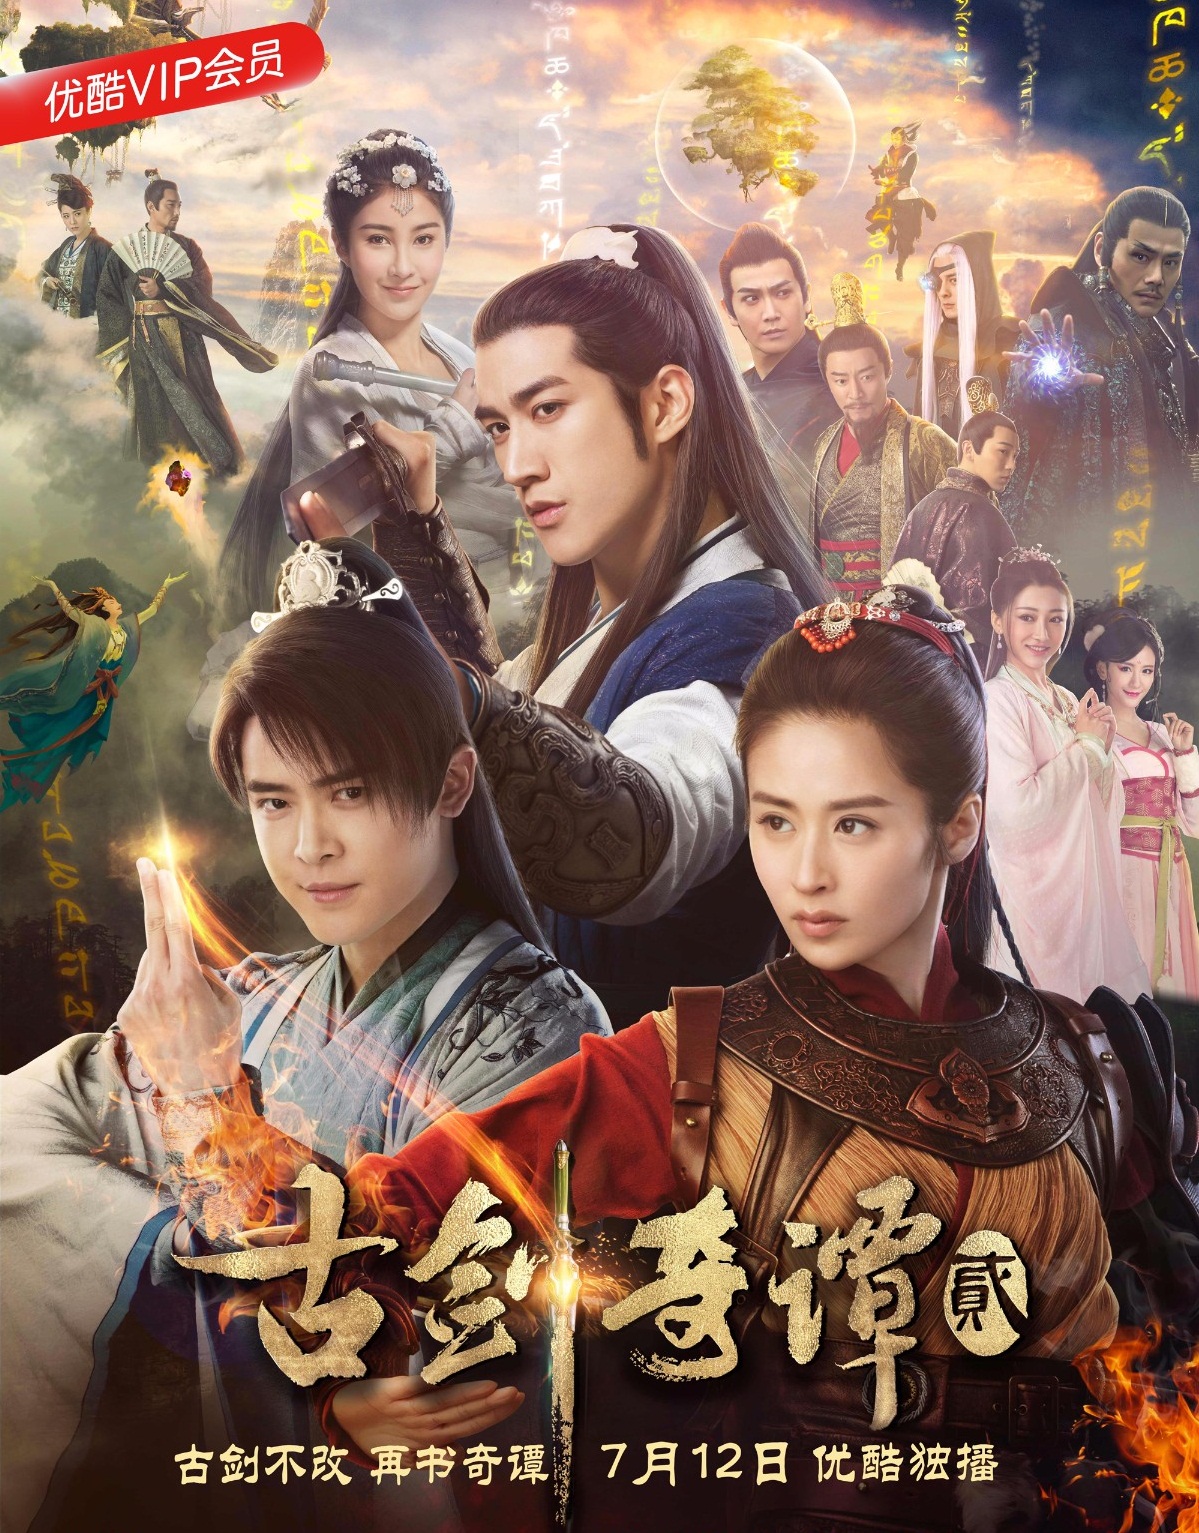 Poster Phim Cô Kiếm Kỳ Đàm 2 (Swords of Legends 2)